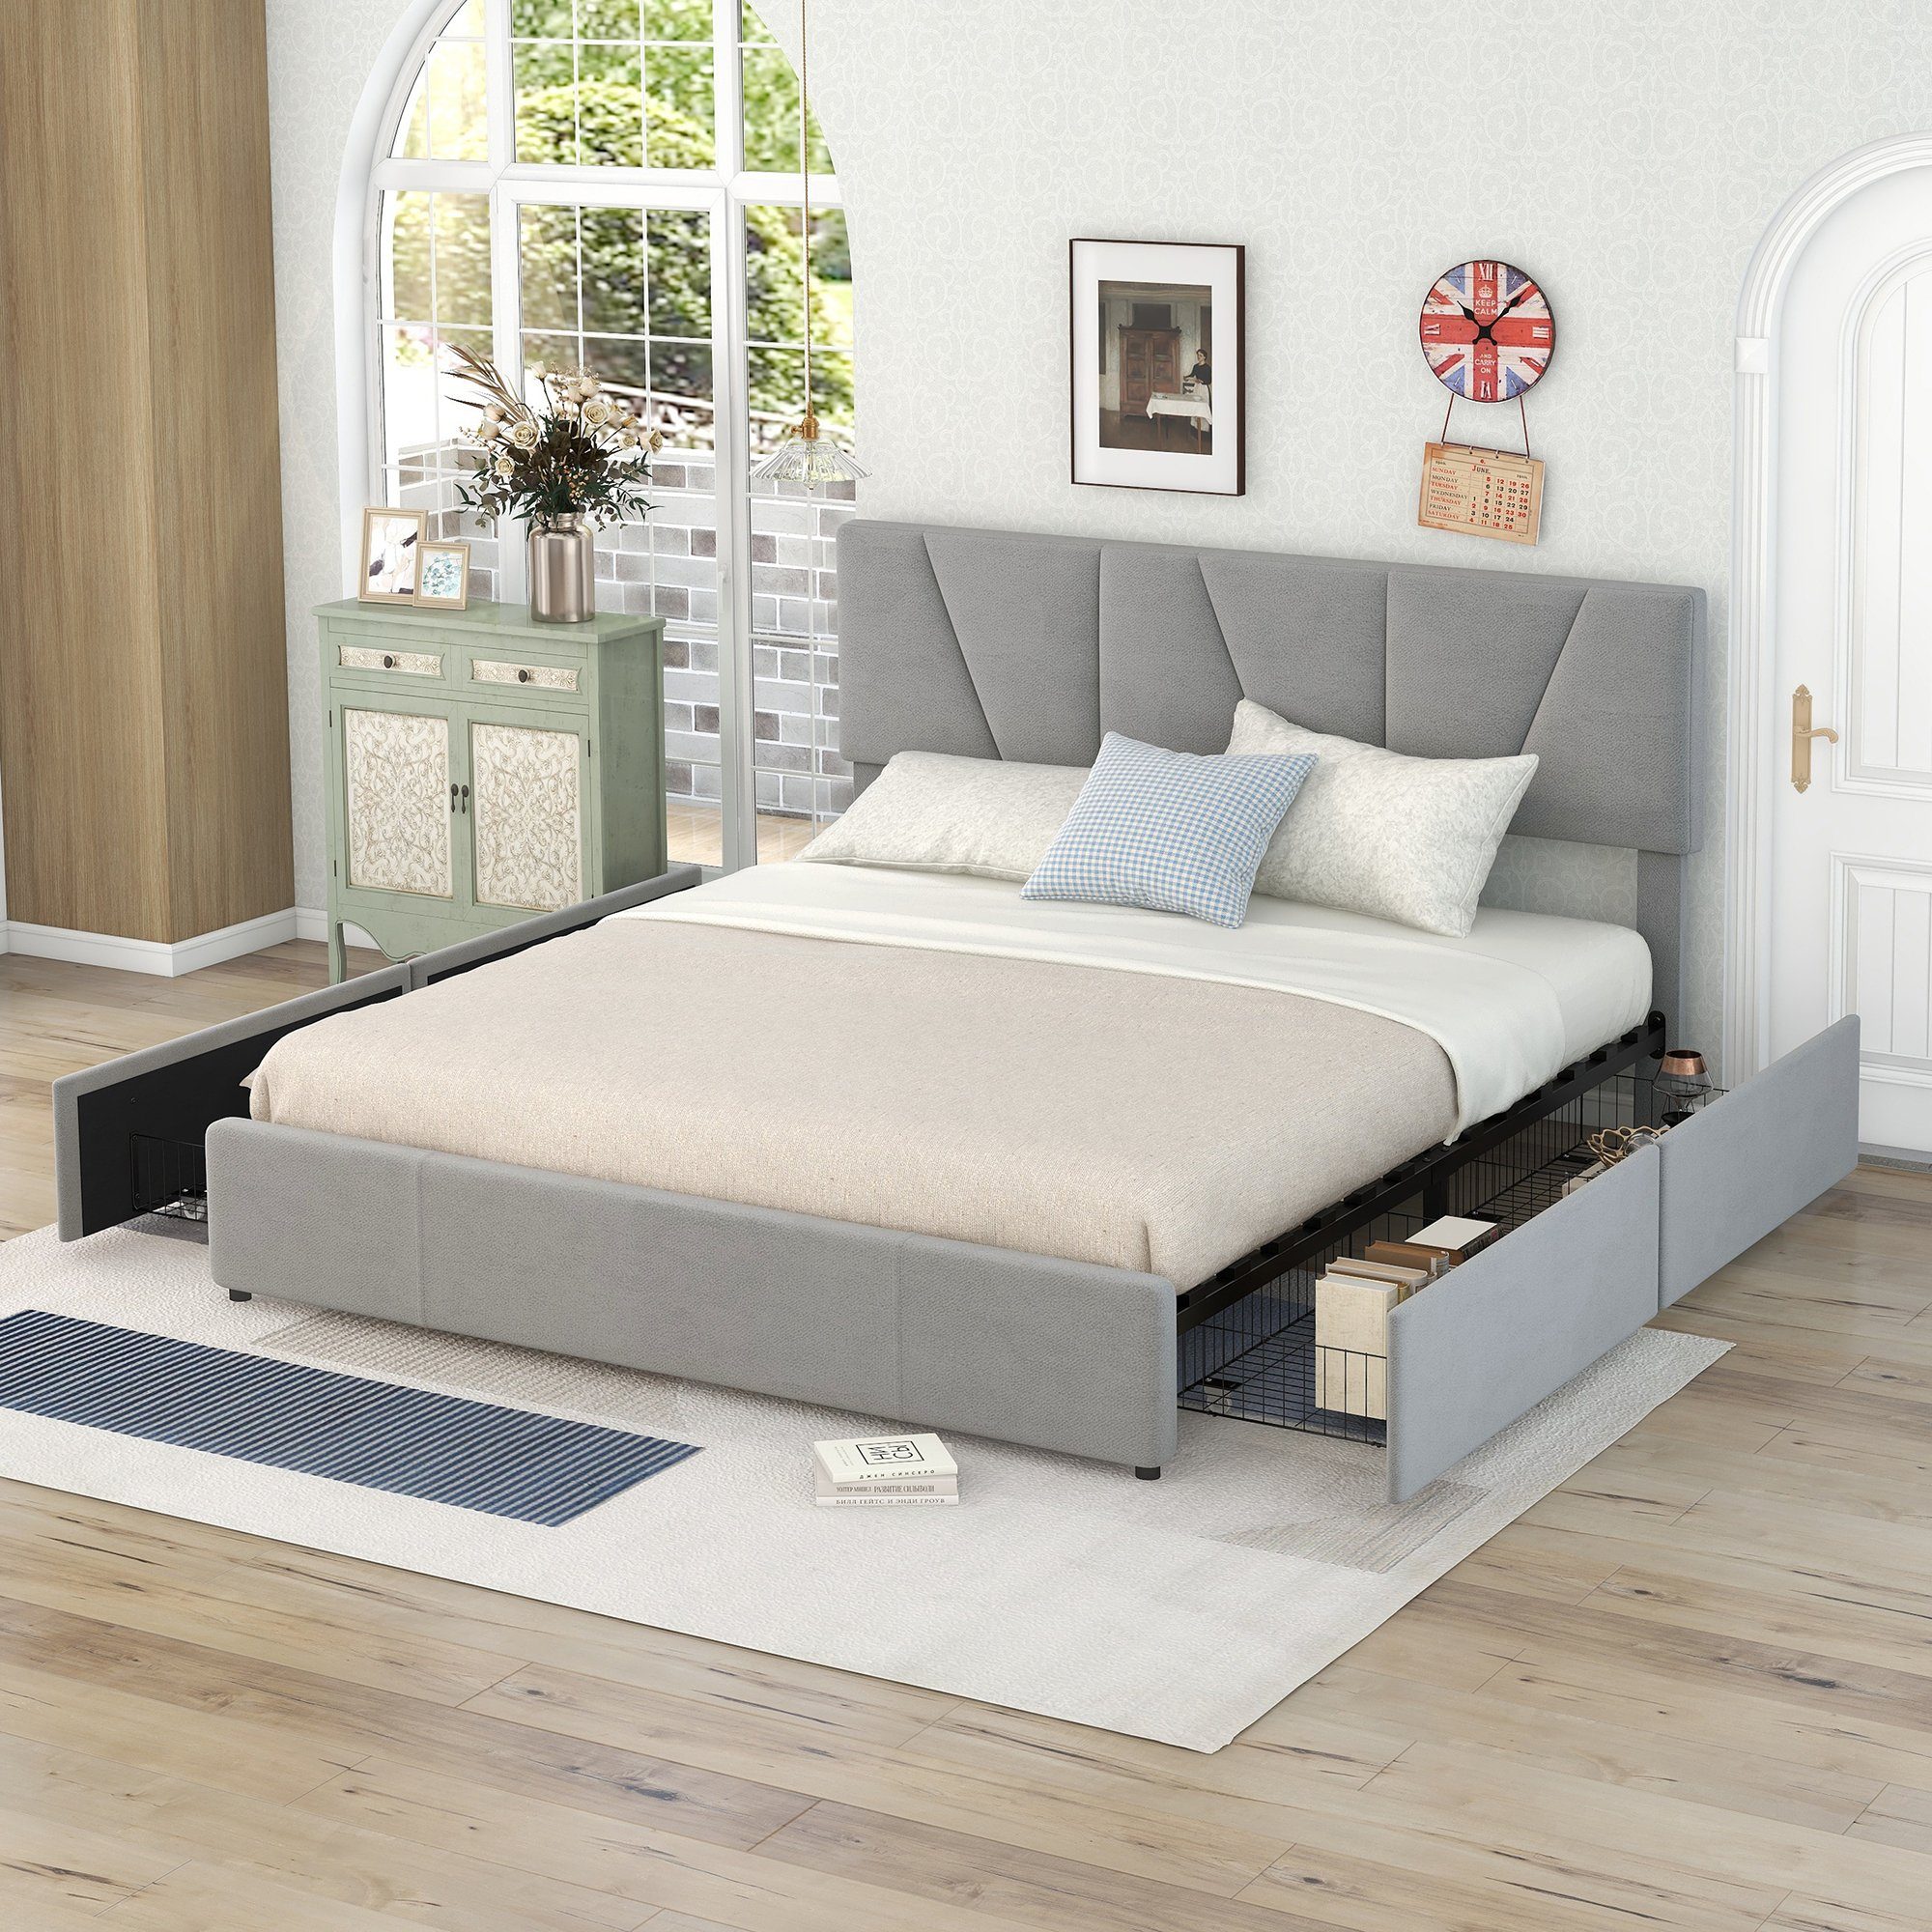 REDOM Bett Doppelbett Gästebett Gepolsterte Betten (mit vier Schubladen auf zwei Seiten,Verstellbares Kopfteil, 160*200), Ohne Matratze grau